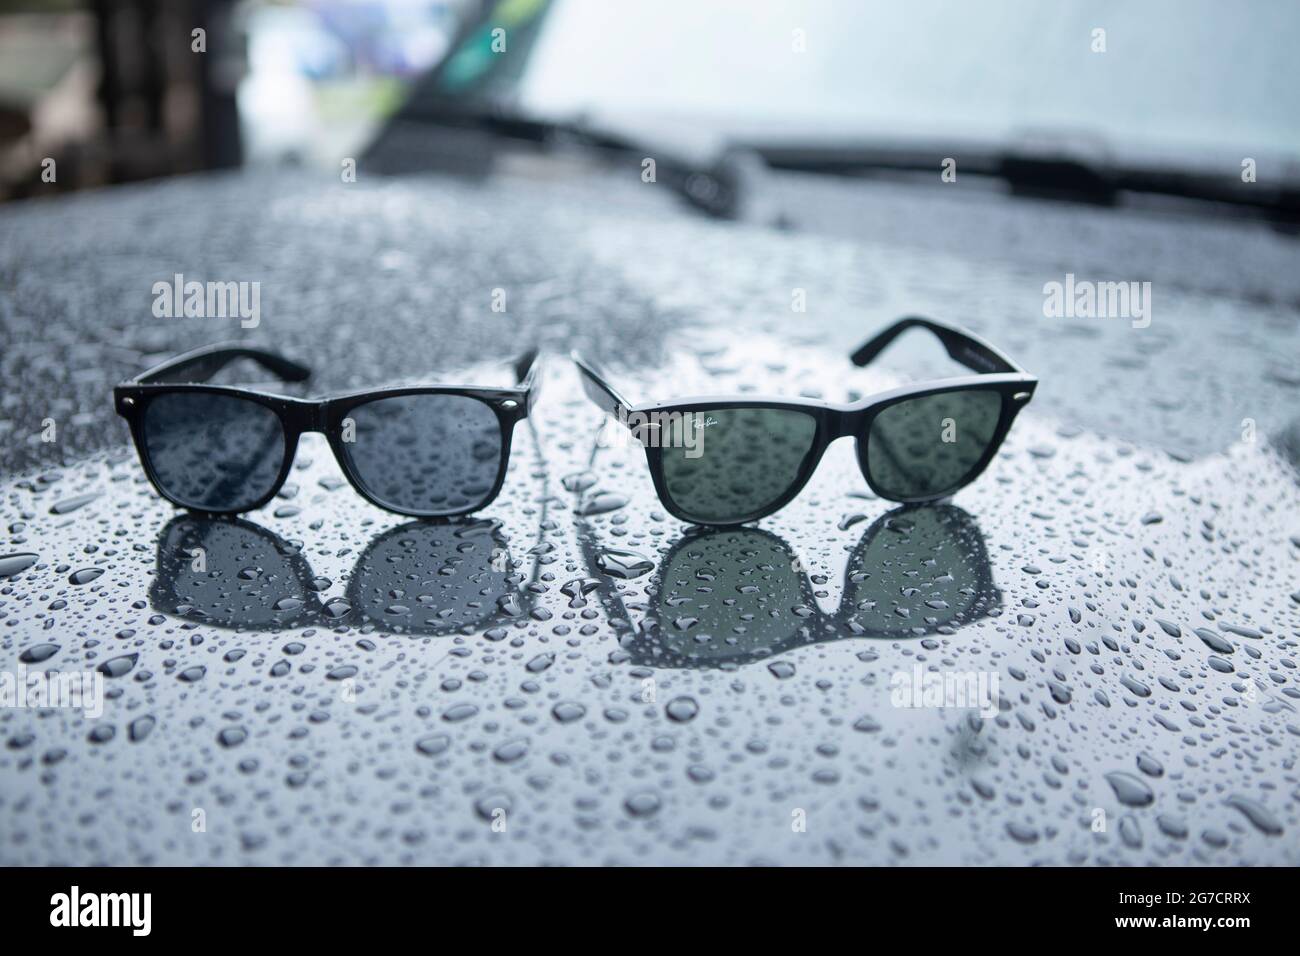 Ray Ban Wayfarer Sonnenbrille mit Regentropfen. Symboldbild Wetter, Sommer, Regenwetter, Regen. Daneben eine billige Fälschung oder Kopie. Stock Photo